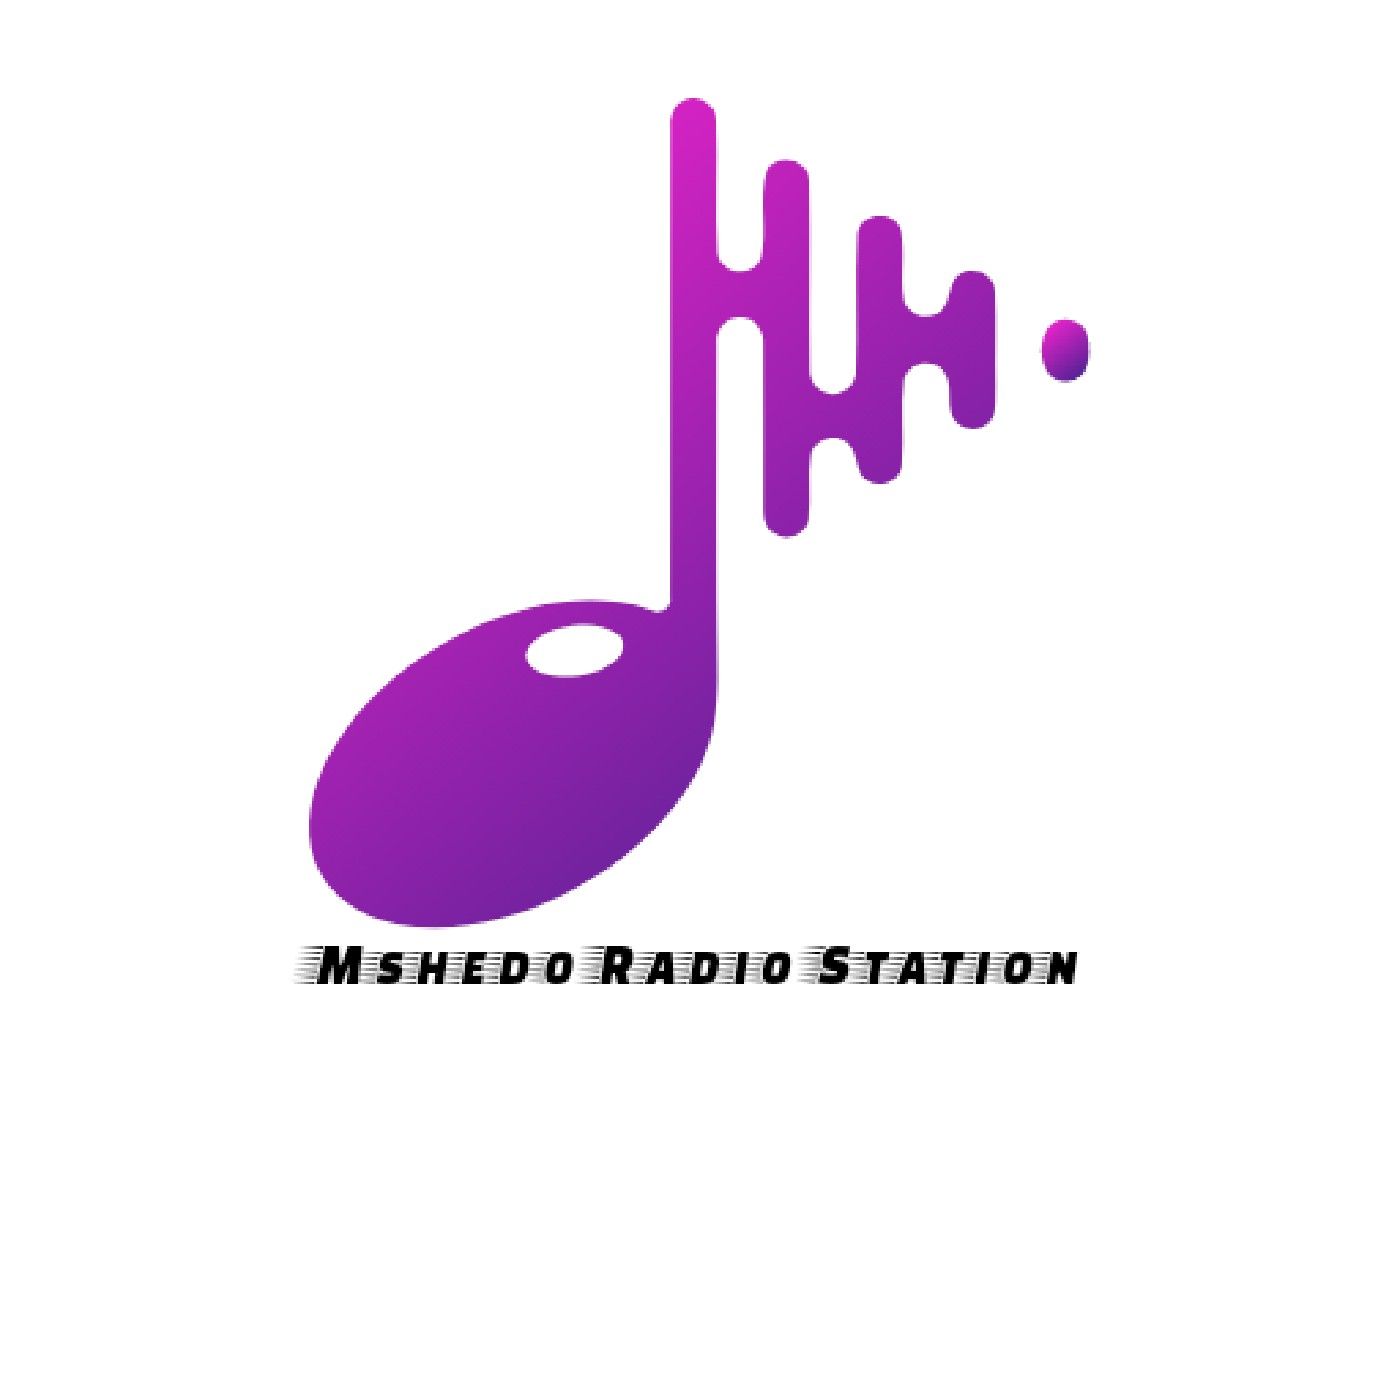 Episode 20 - Mshedo FM